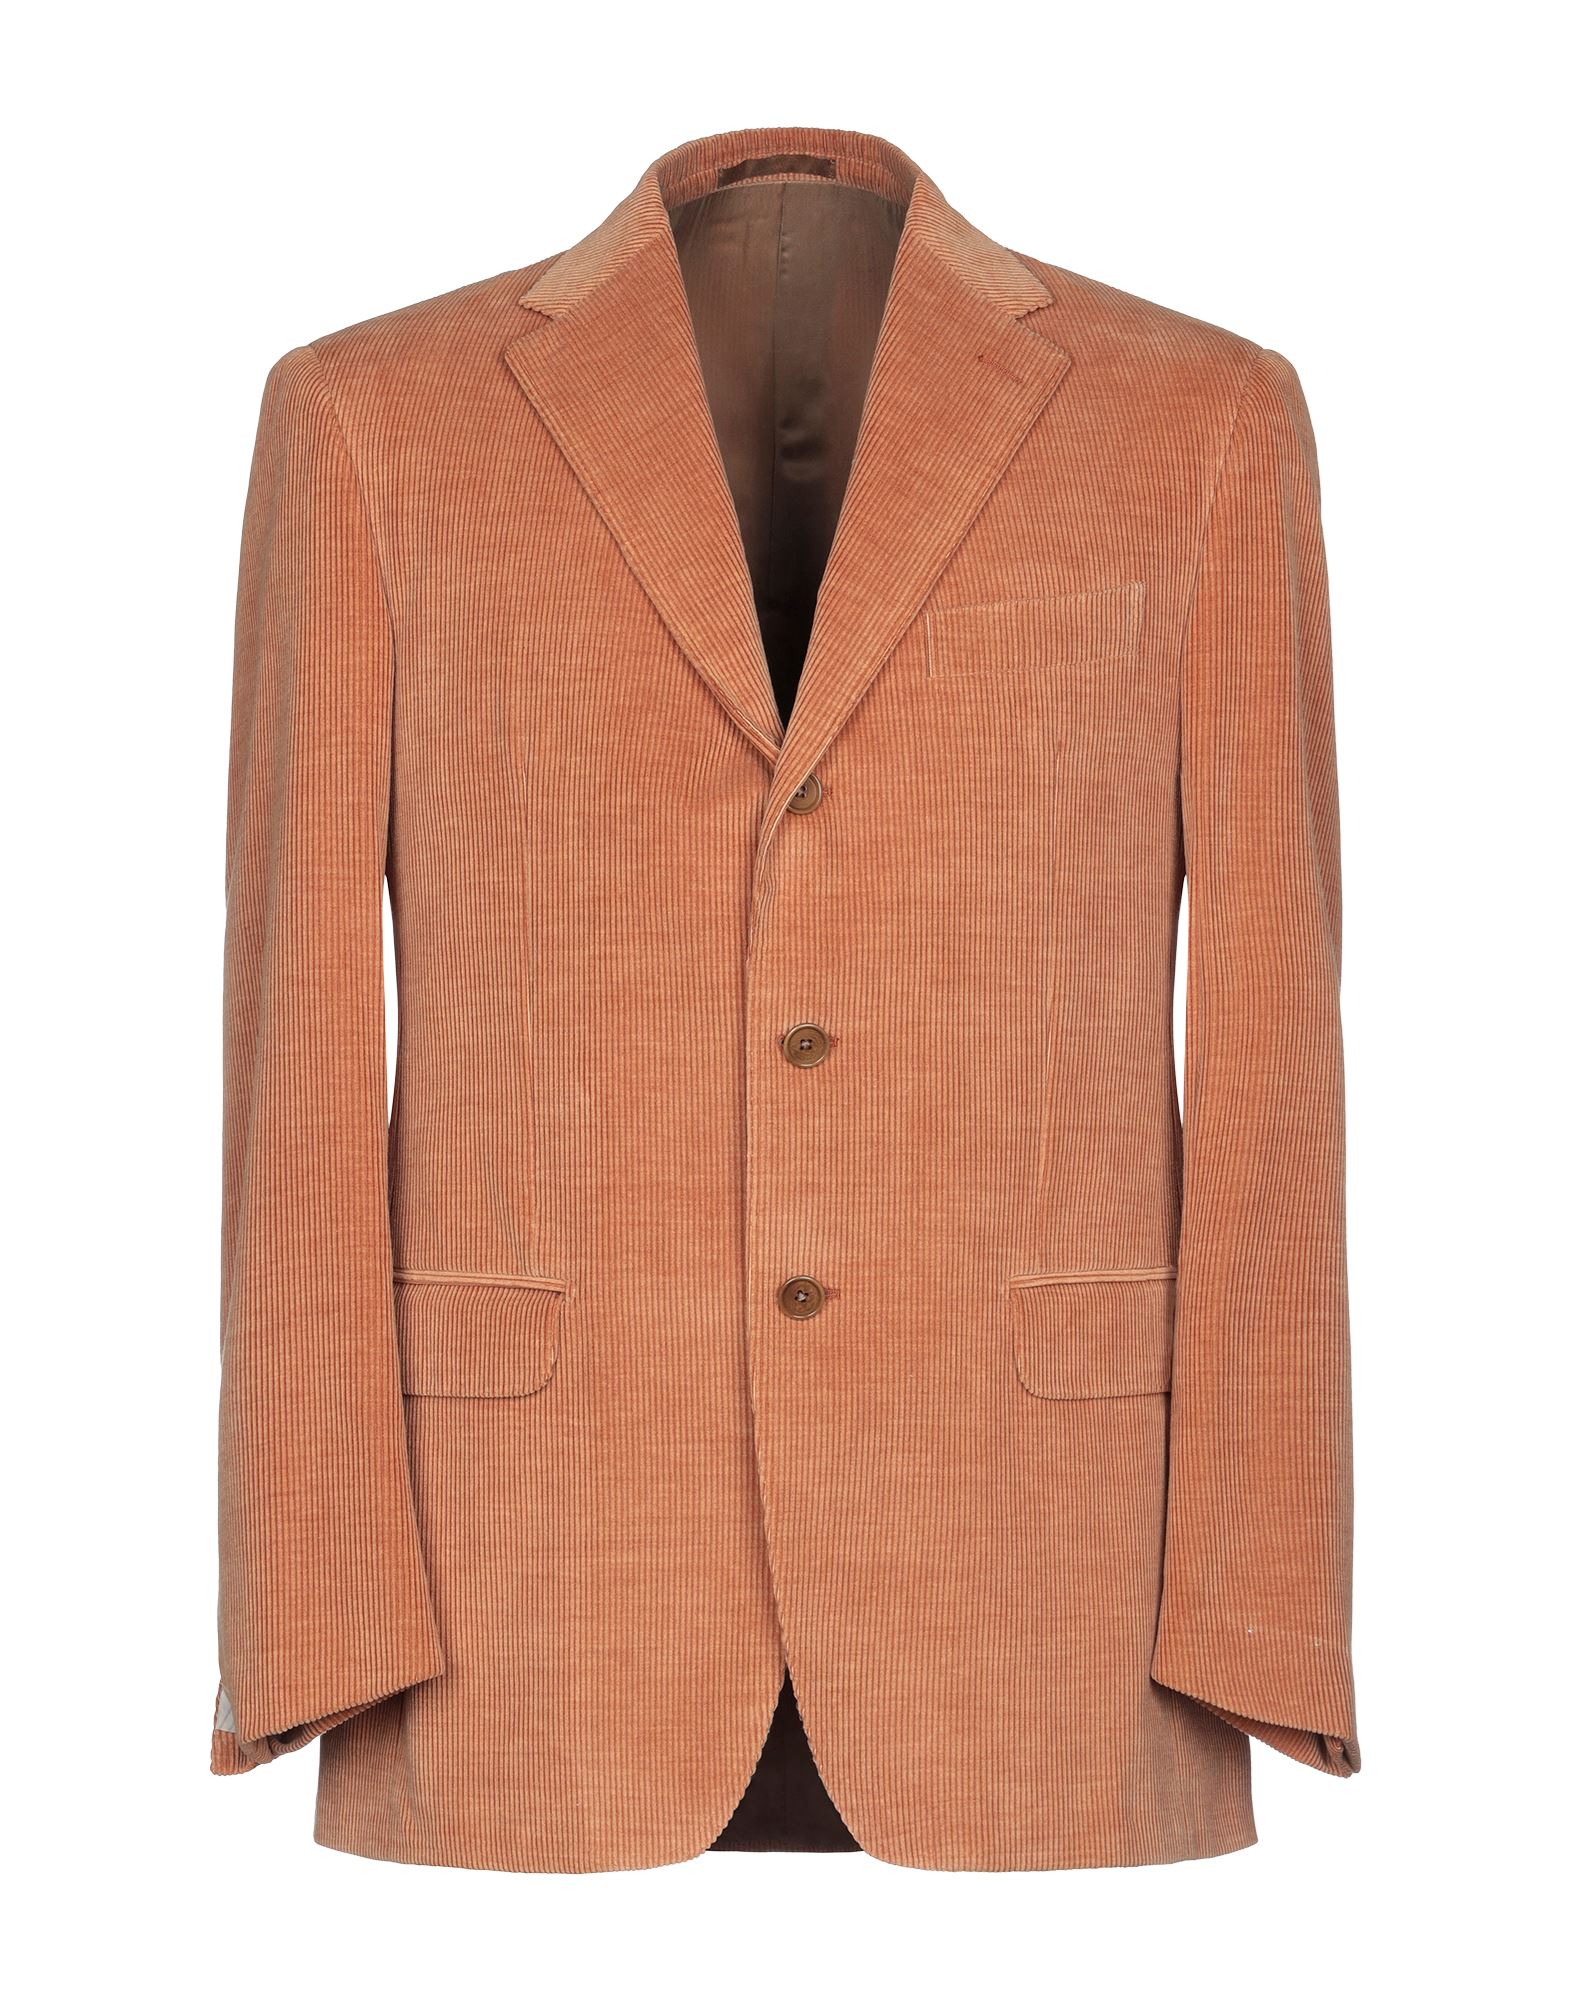 Raffaele Caruso Sartoria Parma Suit Jackets In Brown